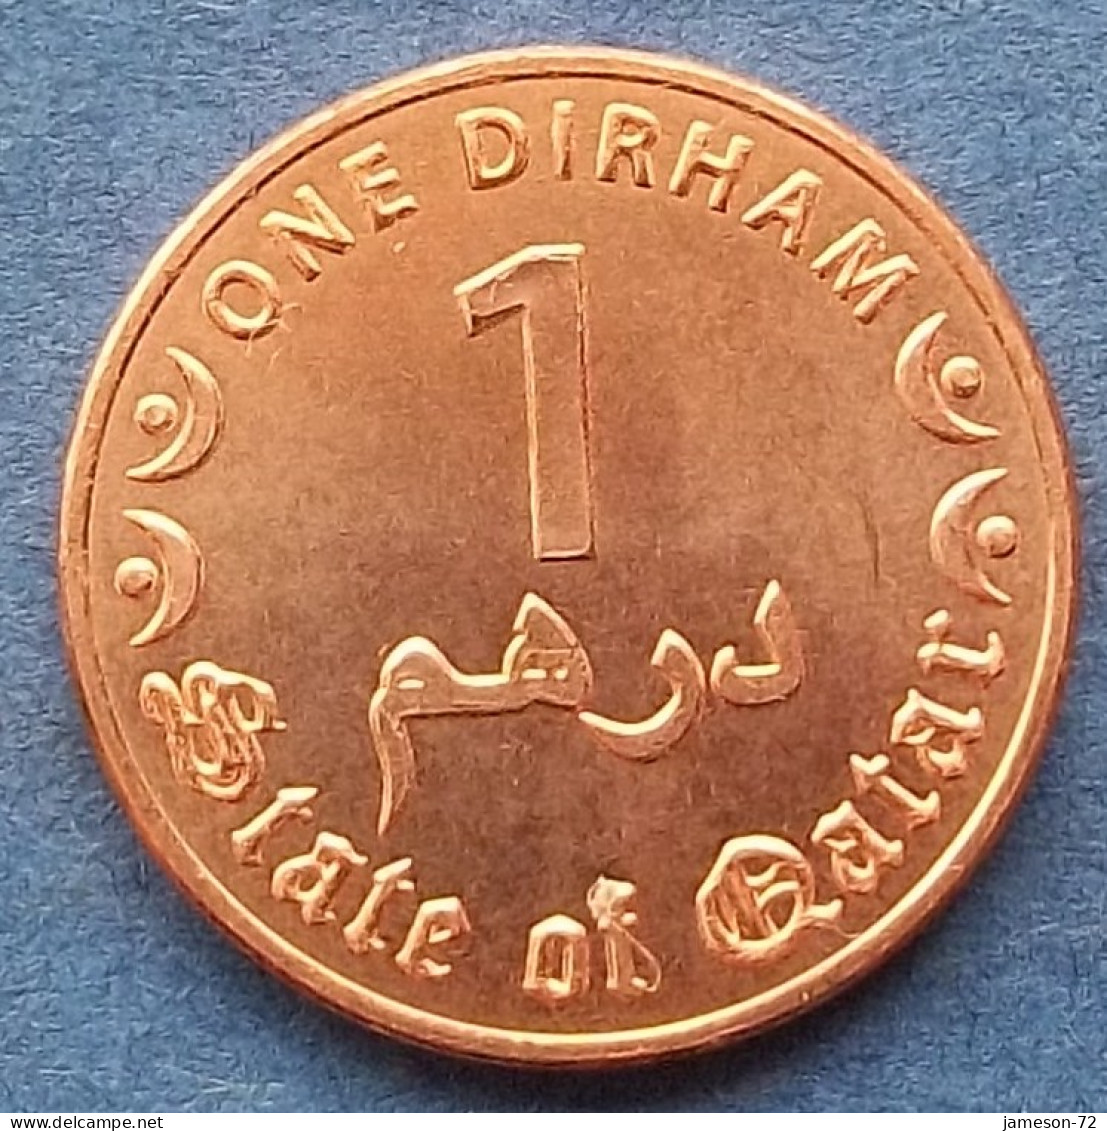 QATAR - 1 Dirham AH1437 2016AD KM# 80 Hamad Bin Khalifah (1995) - Edelweiss Coins - Qatar